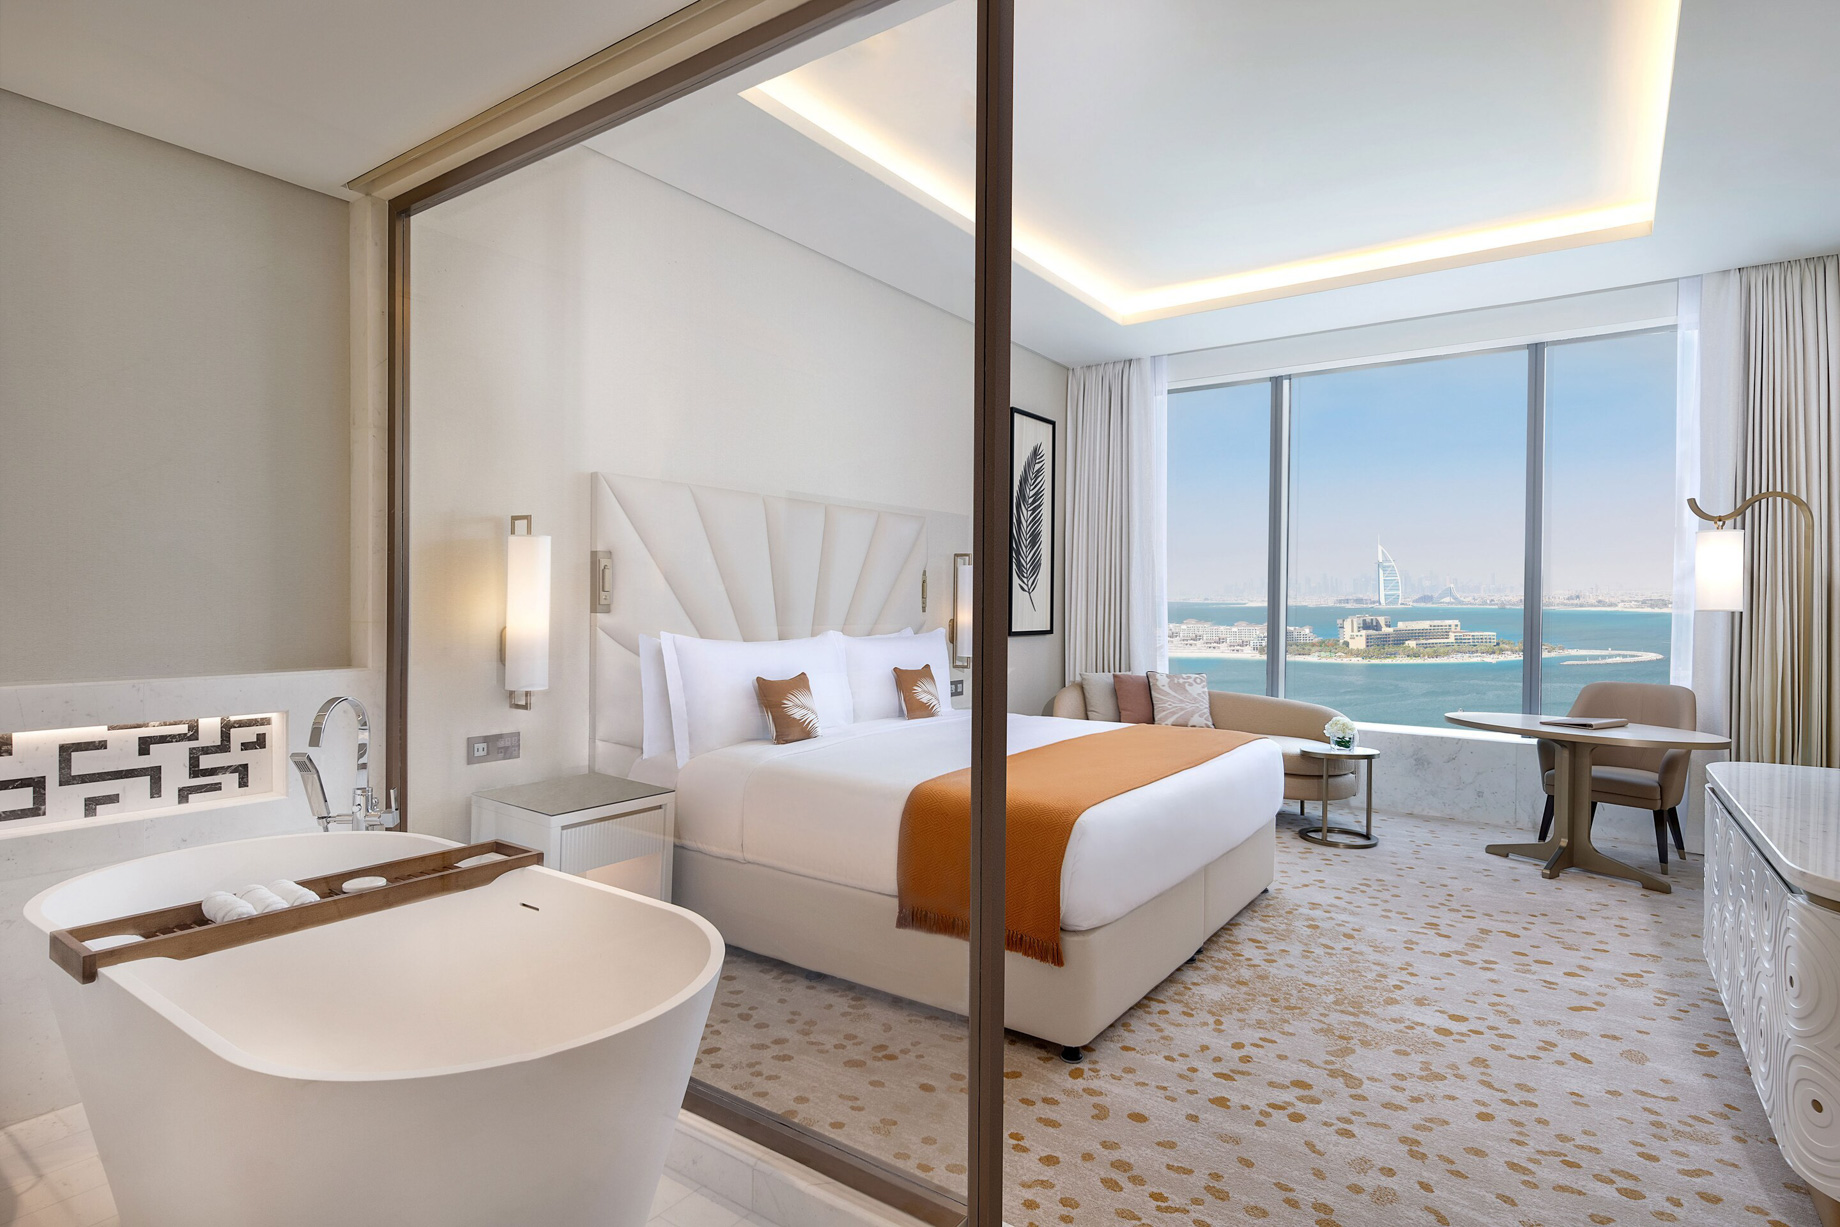 The St. Regis Dubai The Palm Jumeirah Hotel – Dubai, UAE – Guest Room View